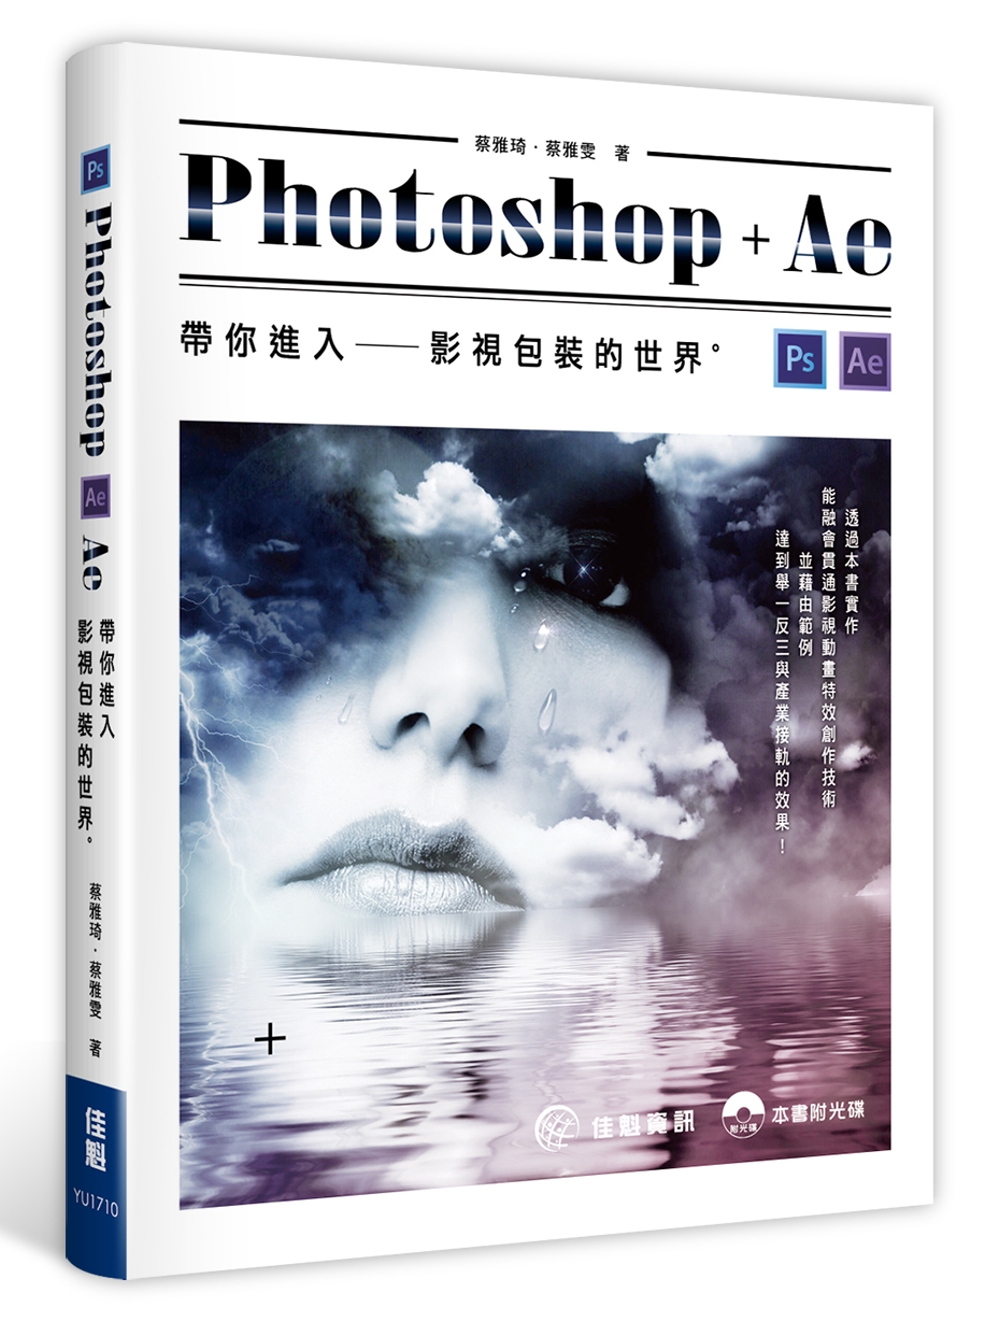 用Photoshop + AE帶你進入影視包裝的世界